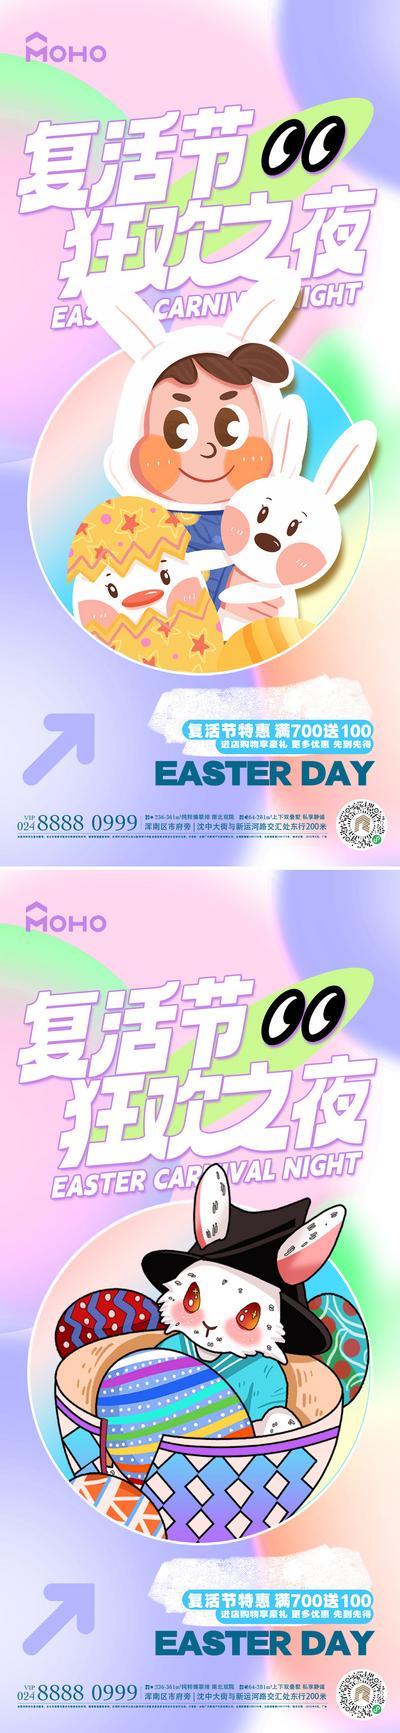 南门网 海报 节日 促销 复活节 彩蛋 复活 兔子 礼物 帽子 庆祝 喜庆 游玩